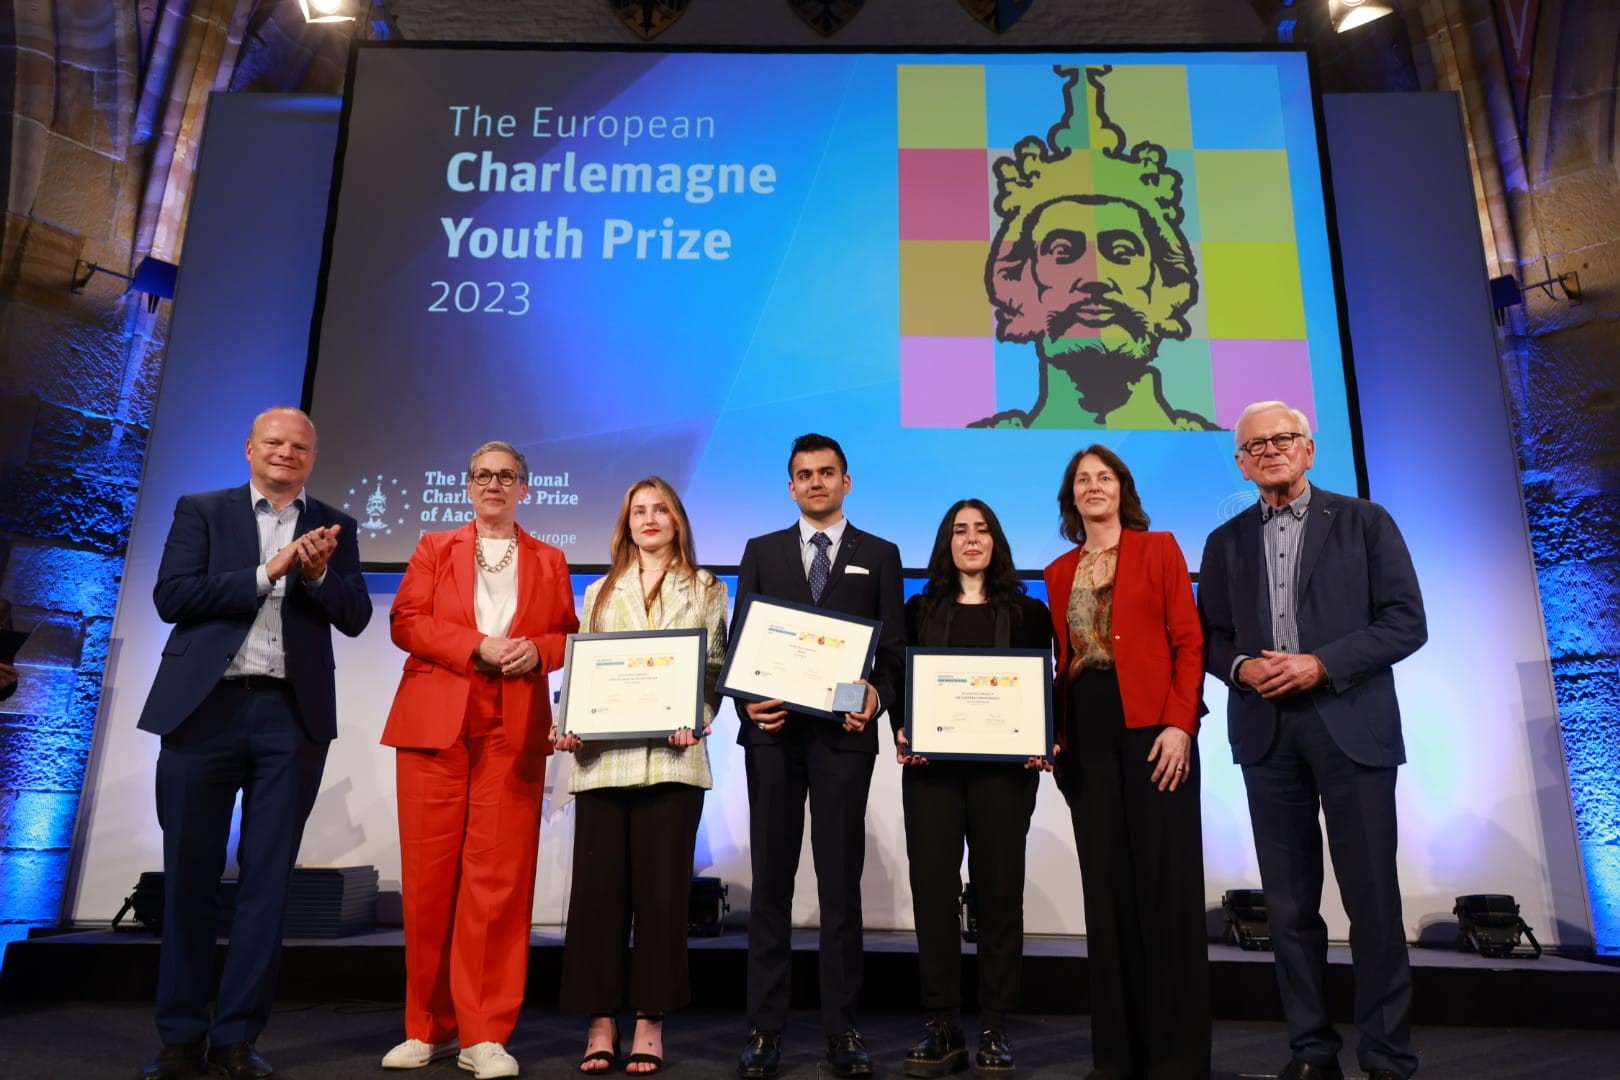 Ξεκίνησε η υποβολή αιτήσεων για το Ευρωπαϊκό Βραβείο Καρλομάγνου για τη Νεολαία!